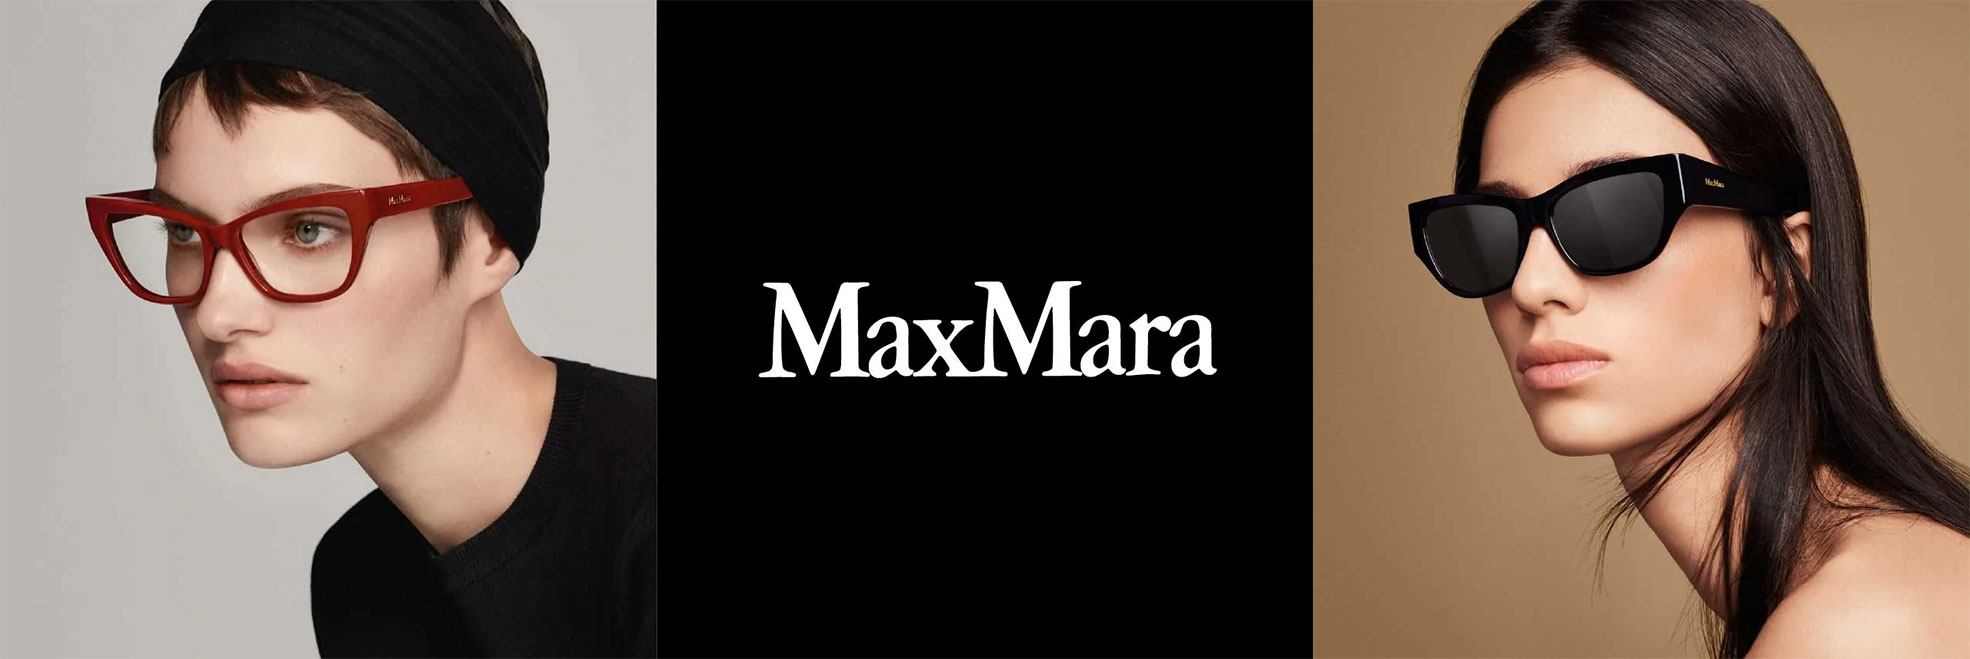 ΠΡΟΣΦΟΡΕΣ - MAX MARA